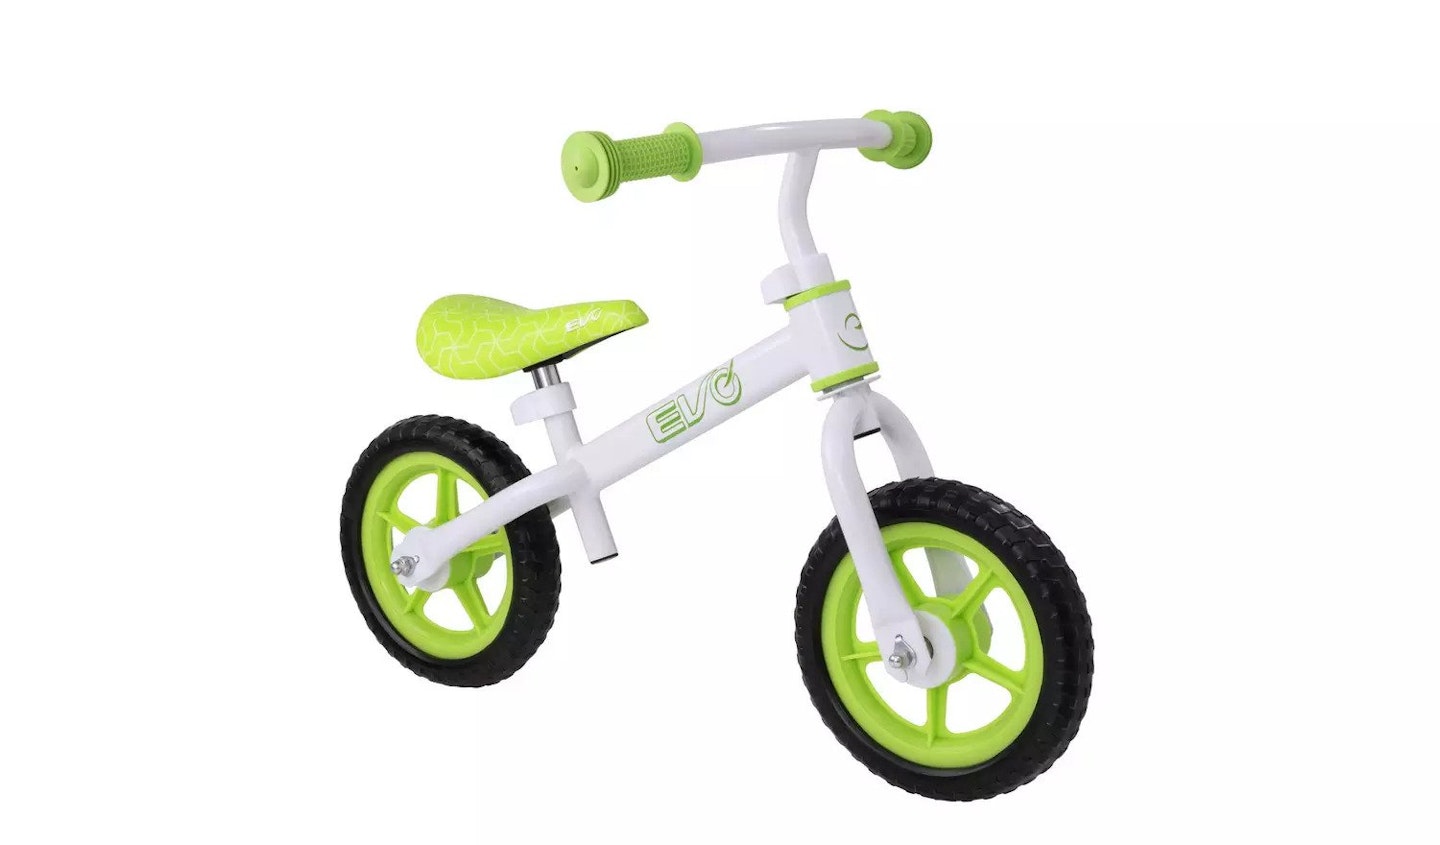 Evo 10 inch Wheel Size Kids Balance Bike